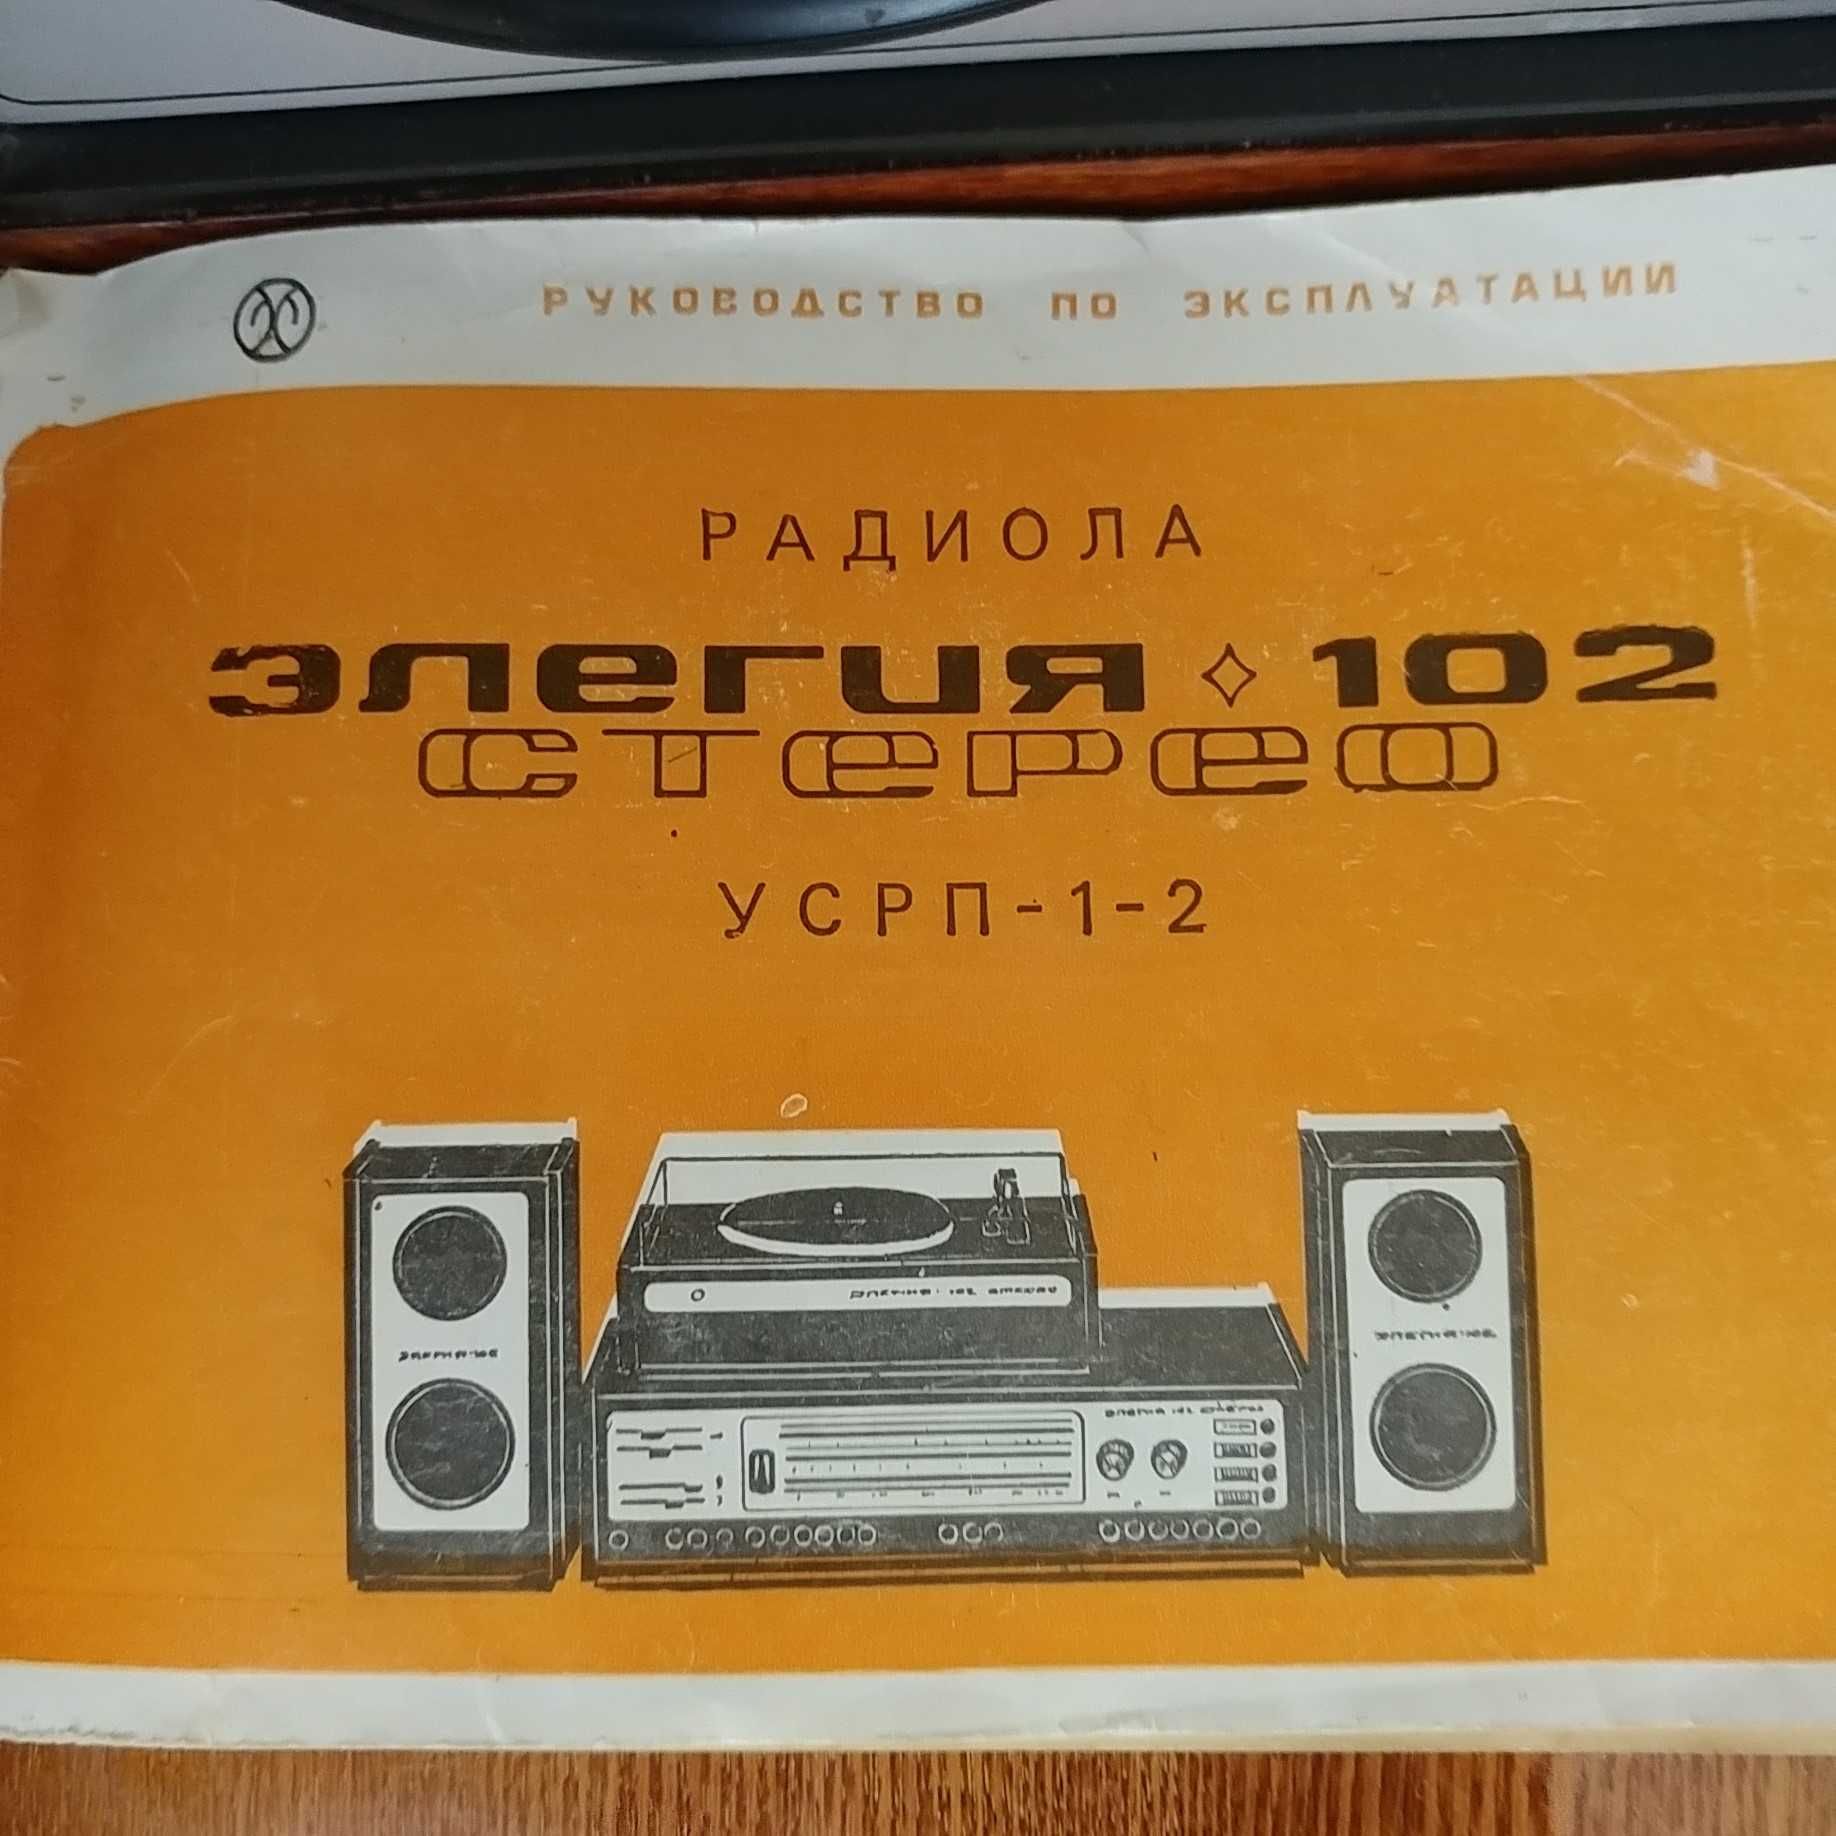 Радиола Элегия 102 стерео УСРП 1-2, СССР